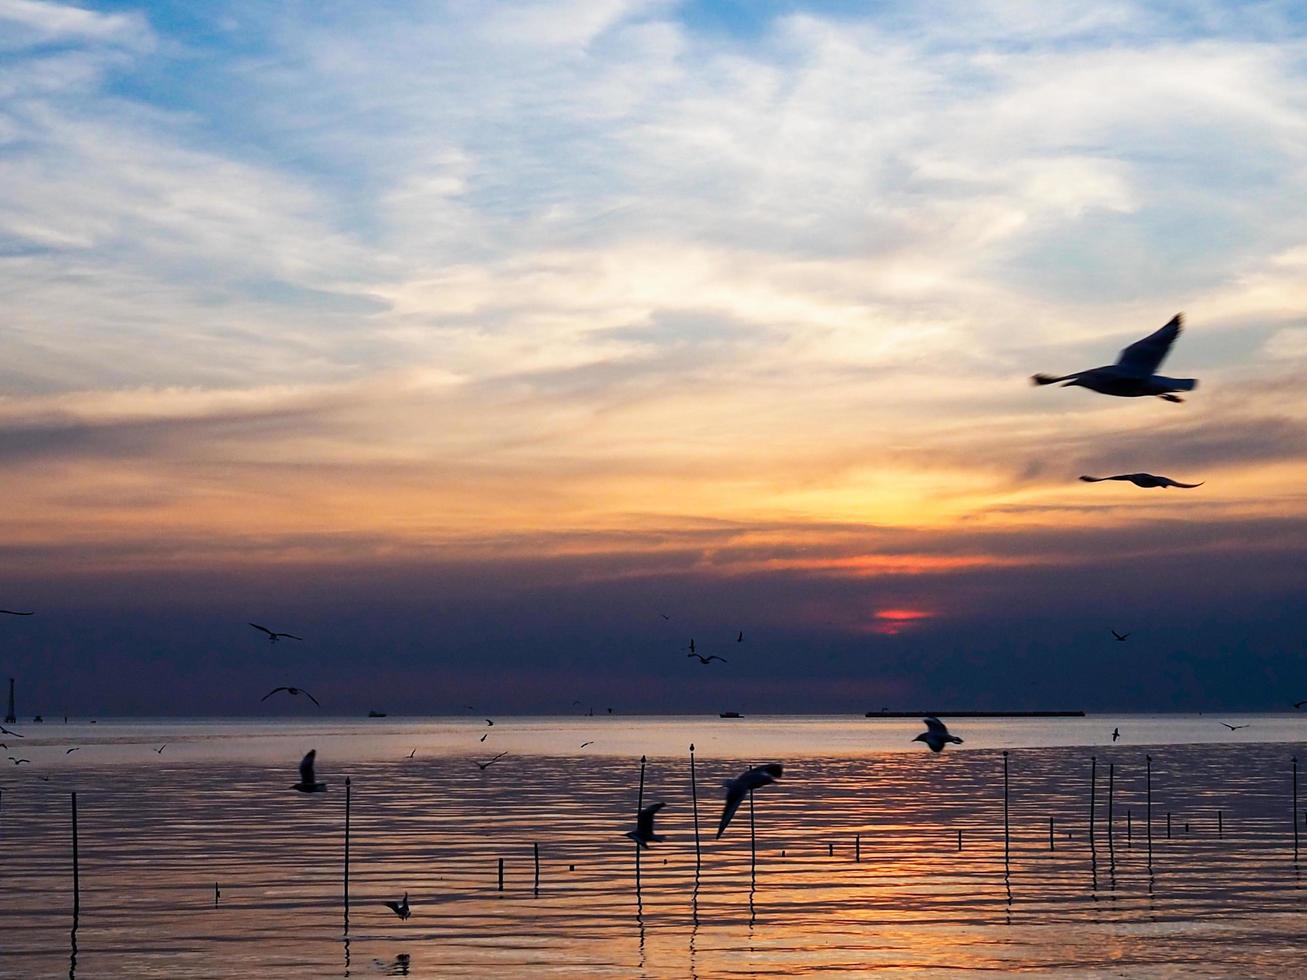 kudde van vogelstand vliegt bovenstaand de zee oppervlak. vogel vliegend terug naar nest in natuurlijk zee en gouden lucht achtergrond gedurende mooi zonsondergang. foto